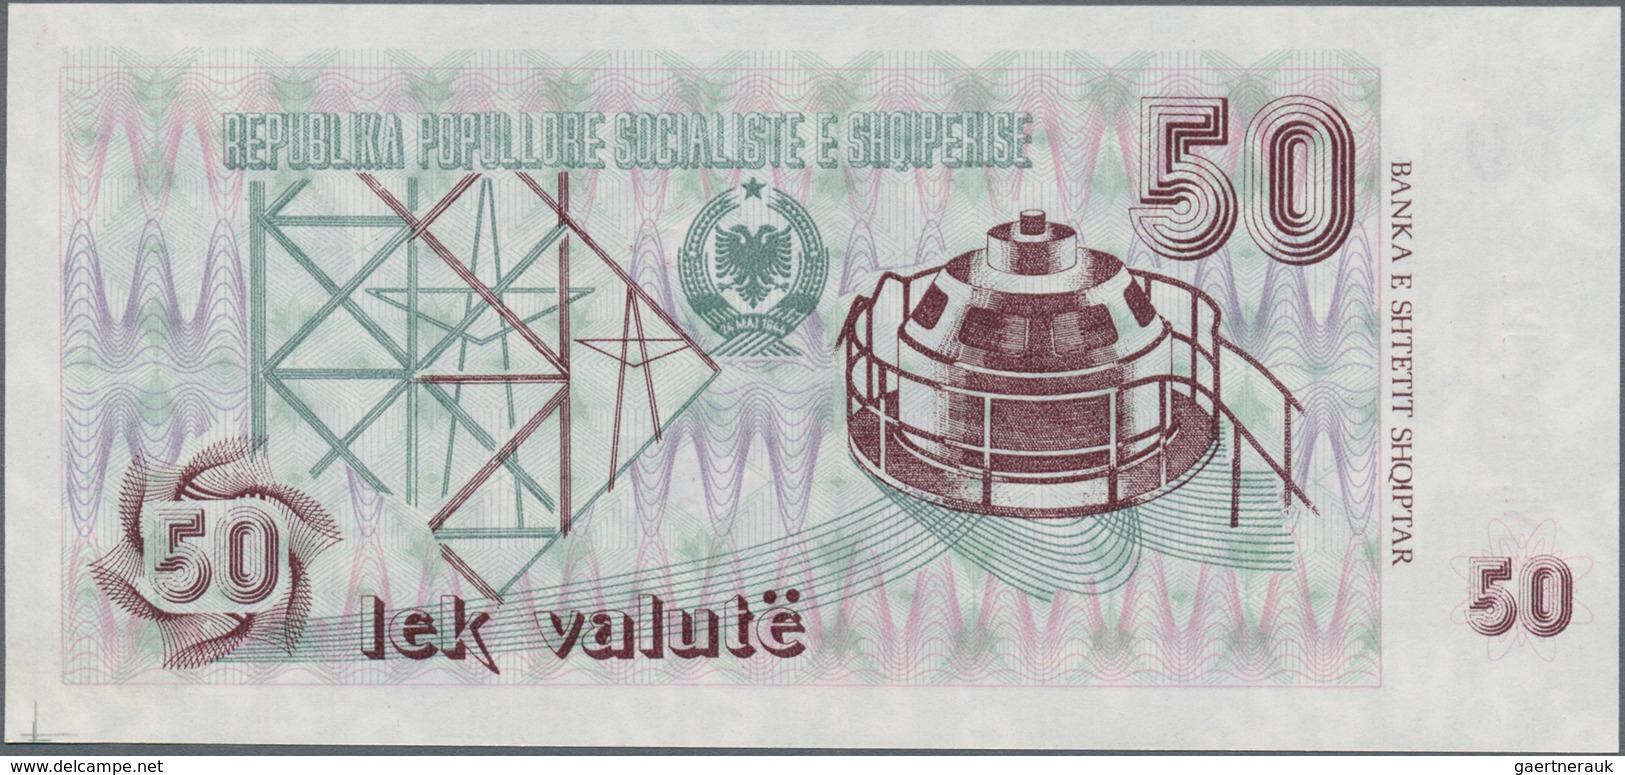 Albania / Albanien: Lot with 6 banknotes comprising 100, 500 Leke 1991, 500 Leke 1996 and 1, 10 and